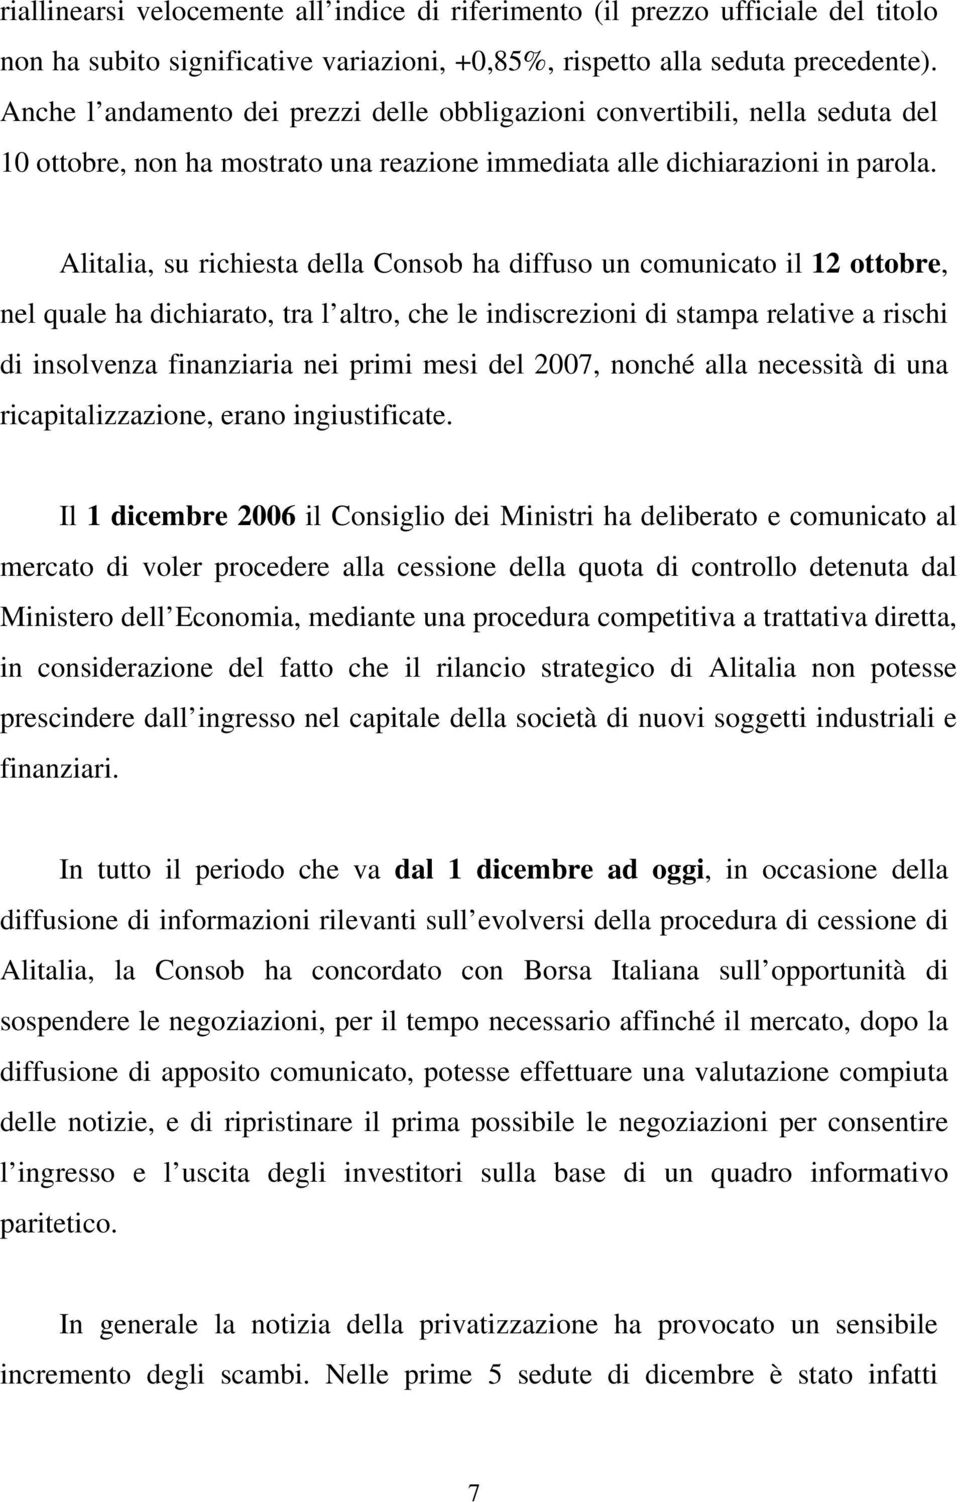 Alitalia, su richiesta della Consob ha diffuso un comunicato il 12 ottobre, nel quale ha dichiarato, tra l altro, che le indiscrezioni di stampa relative a rischi di insolvenza finanziaria nei primi